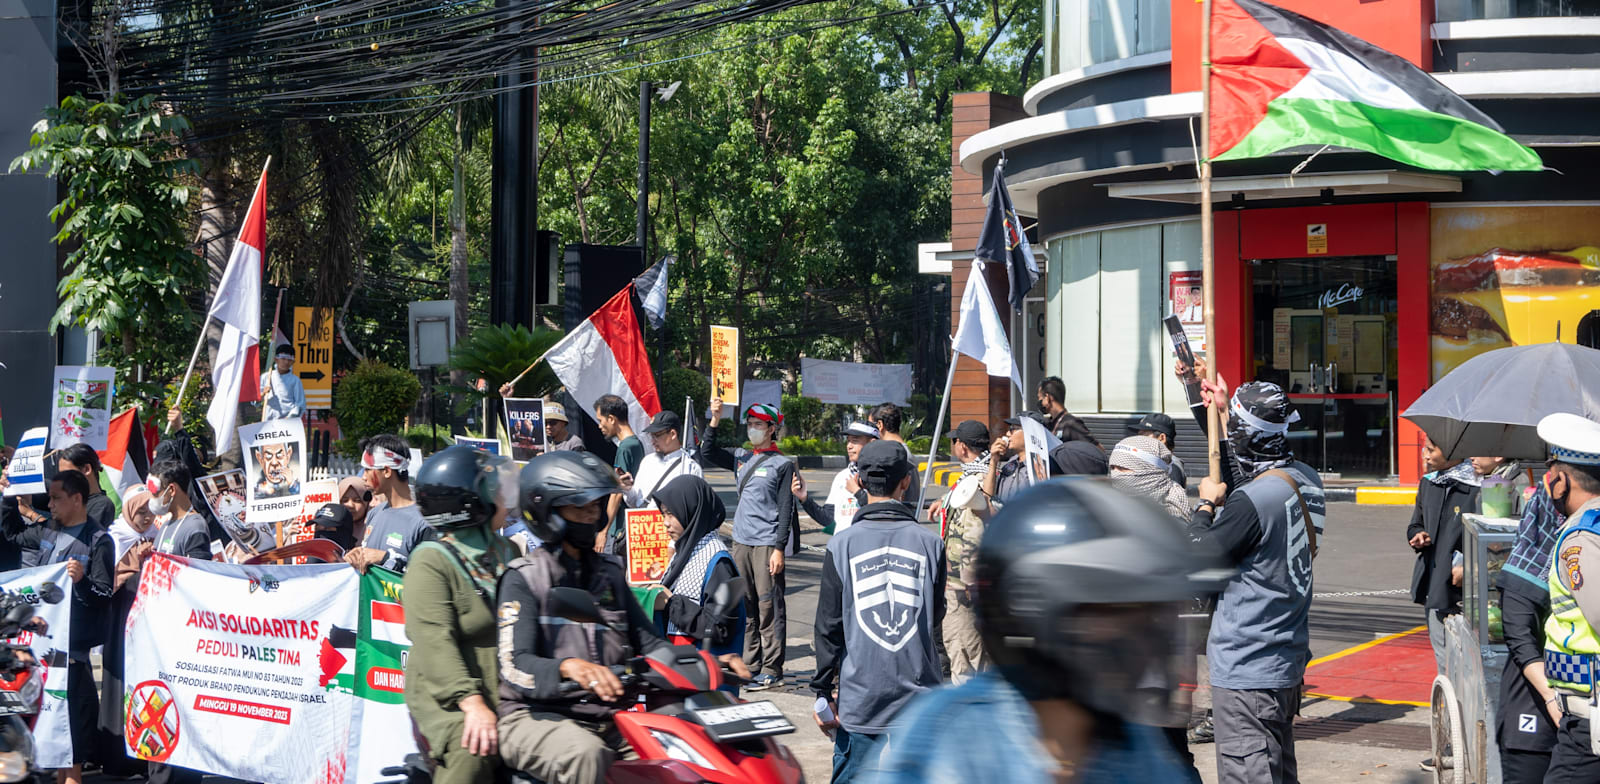 מפגינים פרו-פלסטיניים מול סניף מקדונלד'ס באינדונזיה, במהלך חודש נובמבר / צילום: Shutterstock, ardiwebs